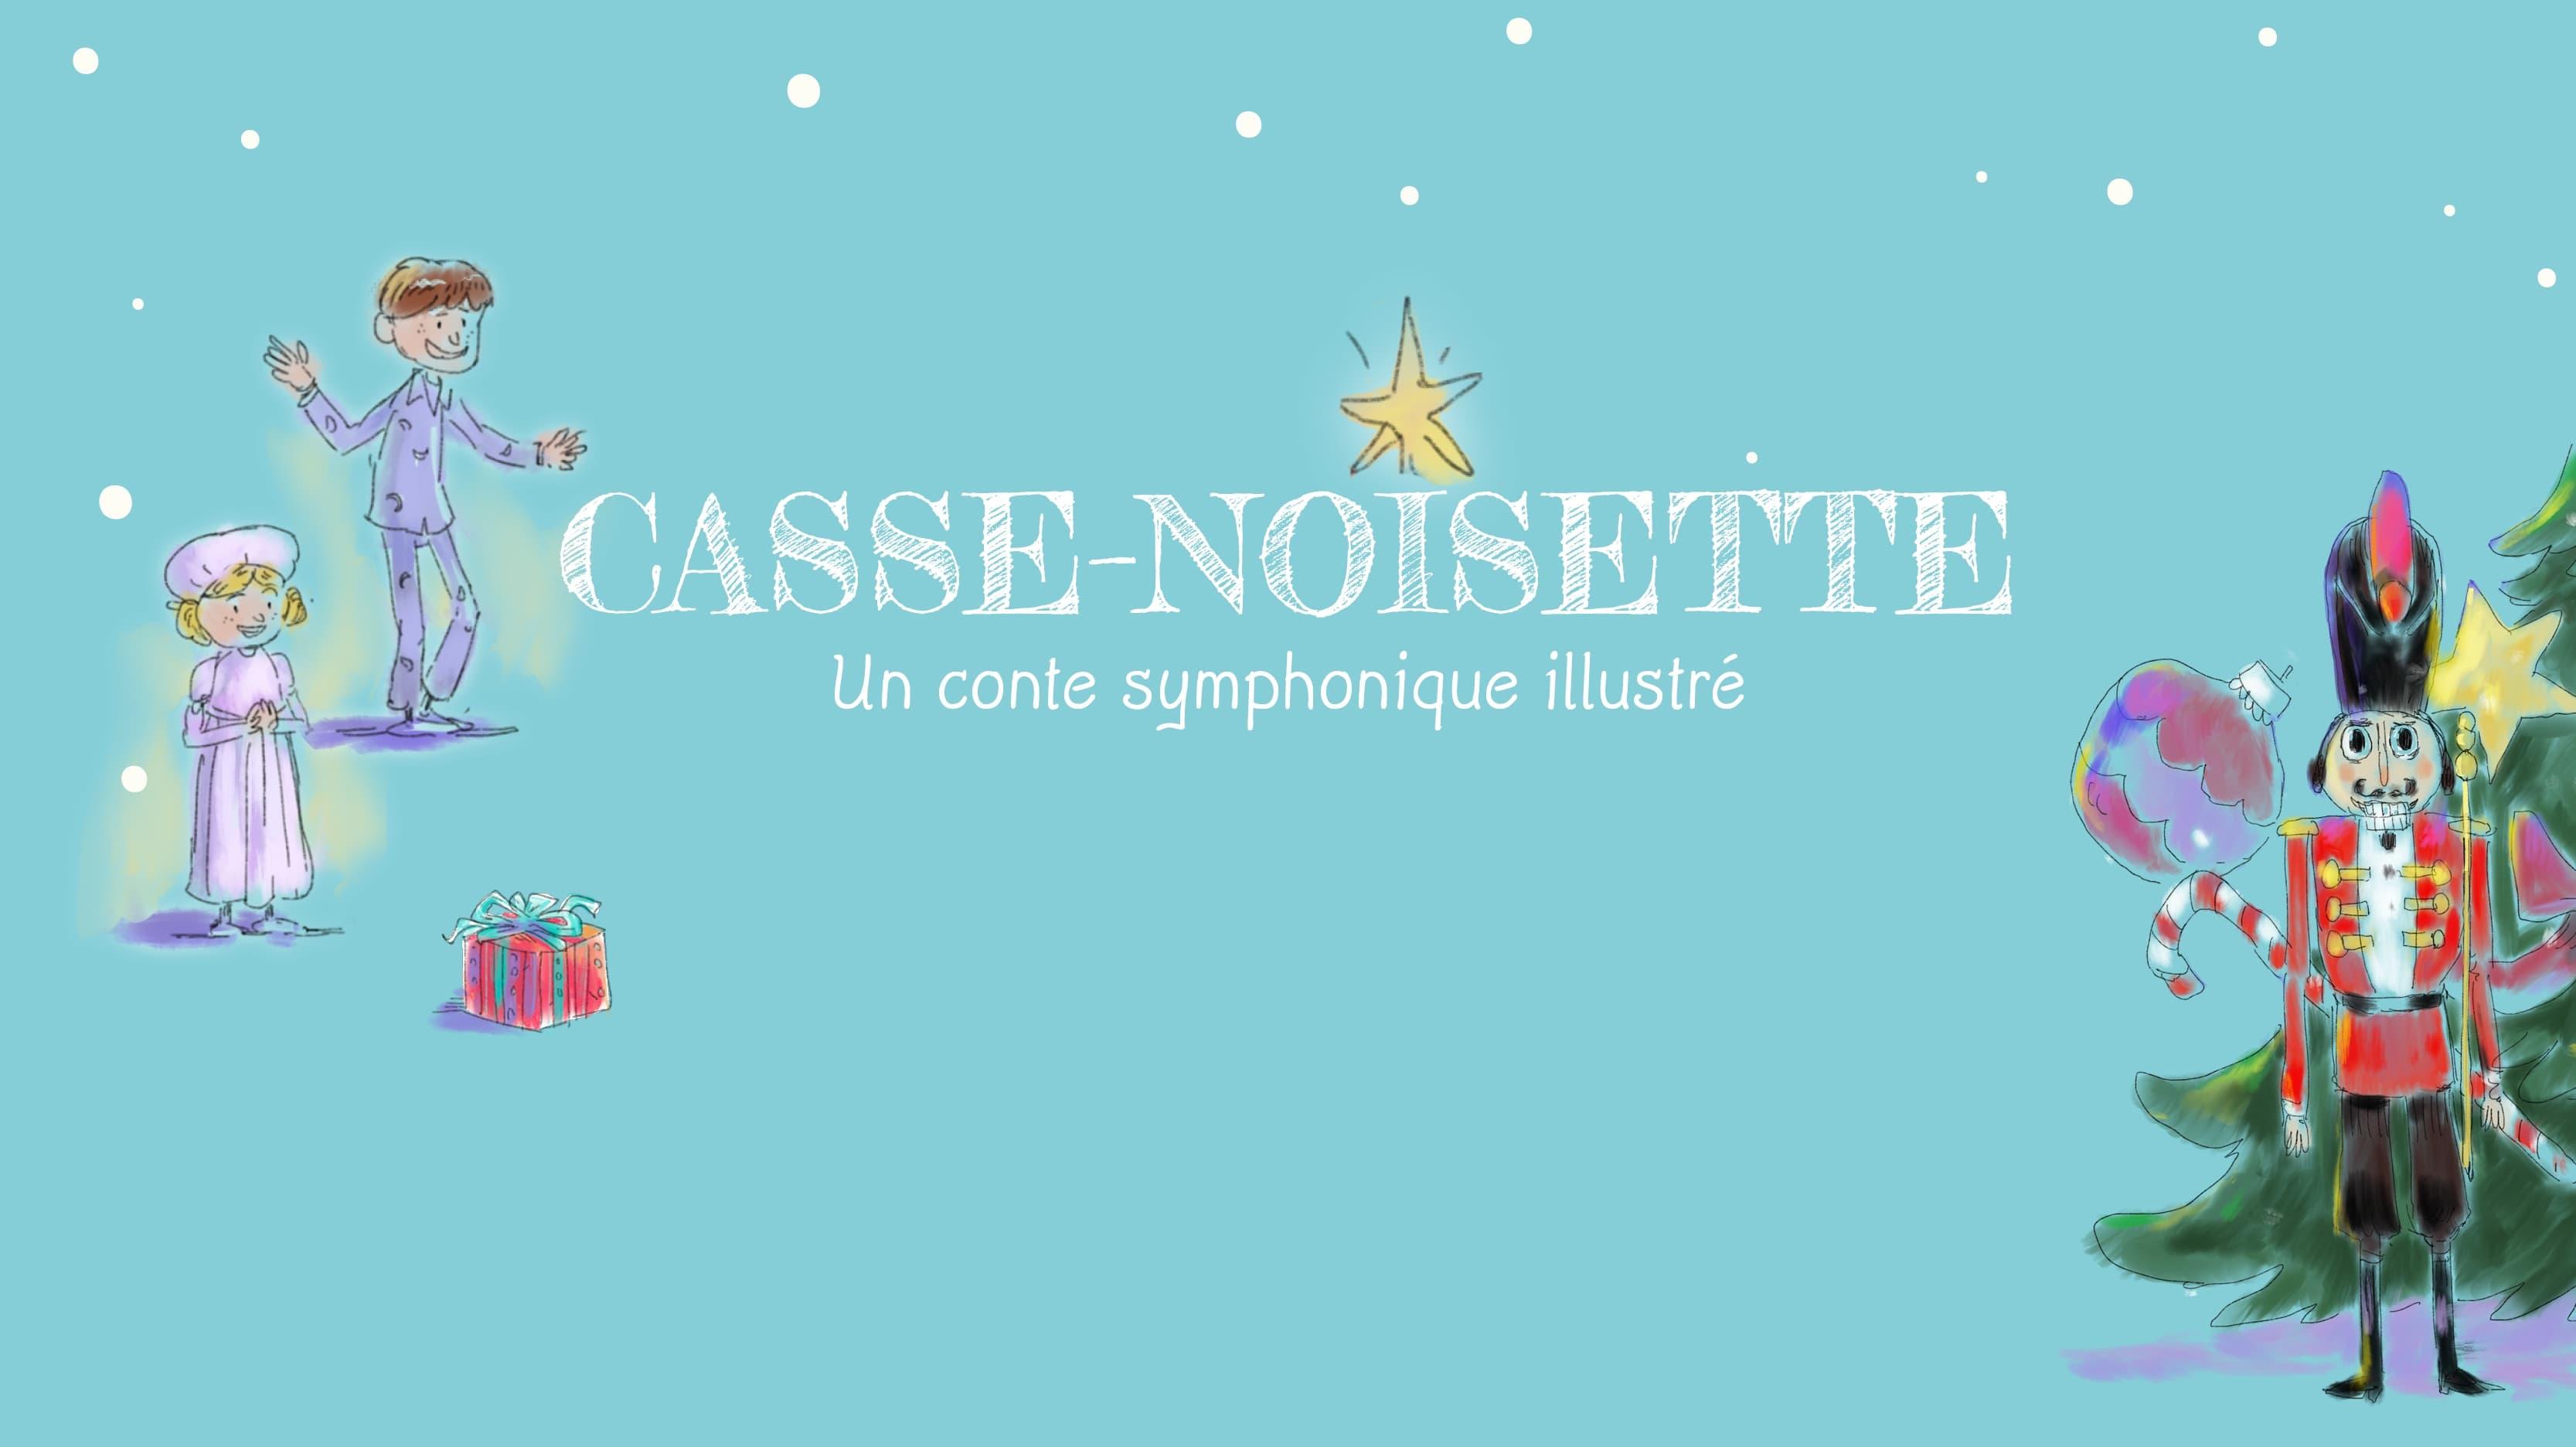 Casse-Noisette - Un conte symphonique illustré backdrop